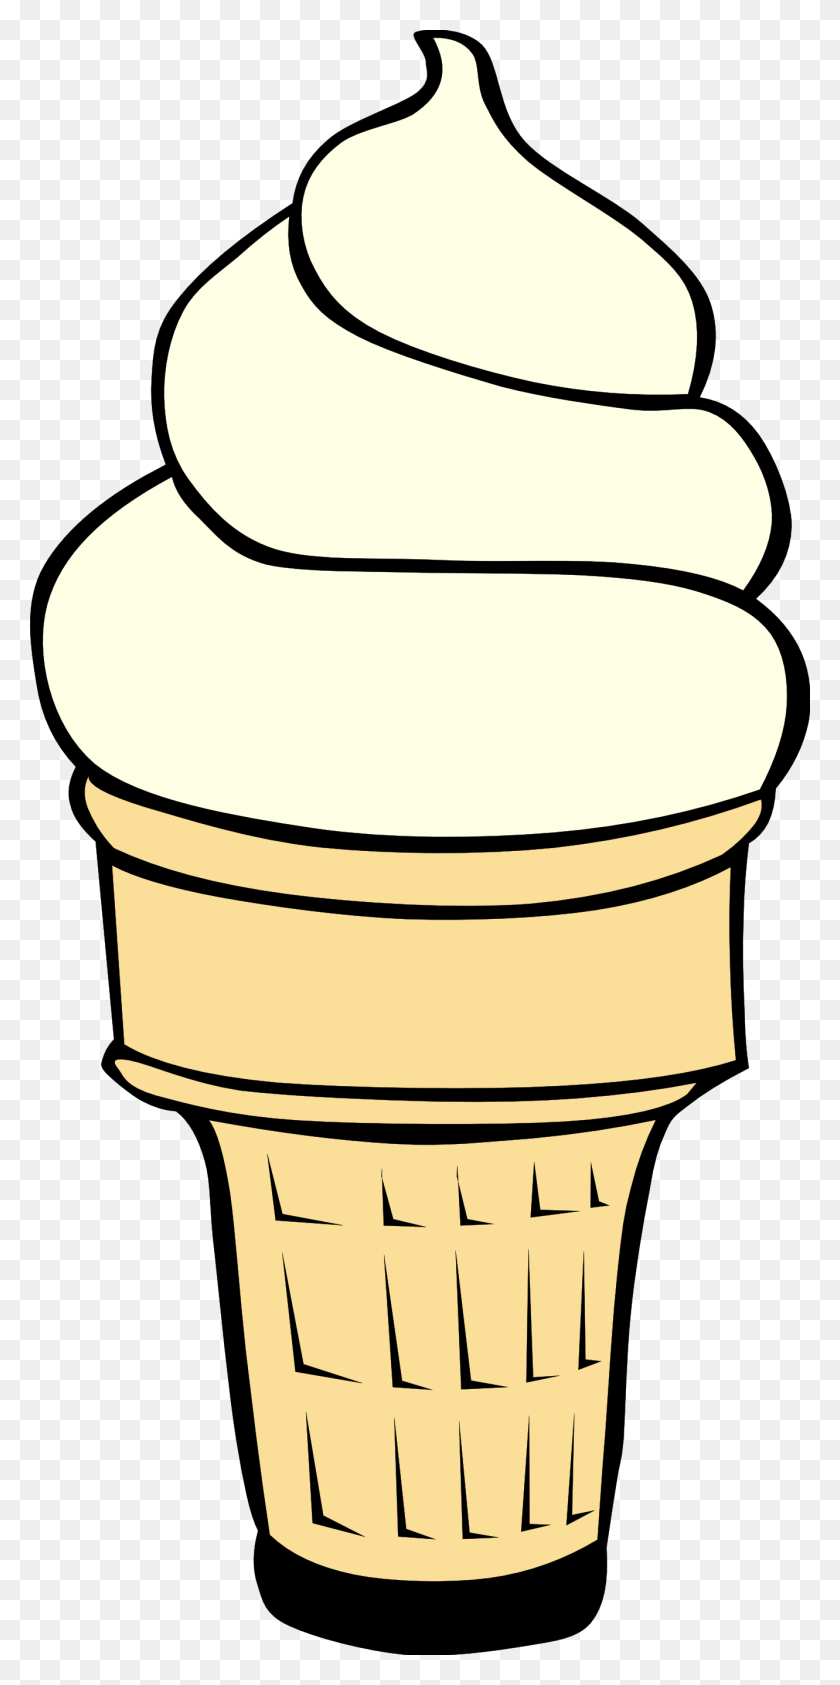 1331x2773 Free Images Of Ice Cream Cones - Ice Cream Sundae Clipart